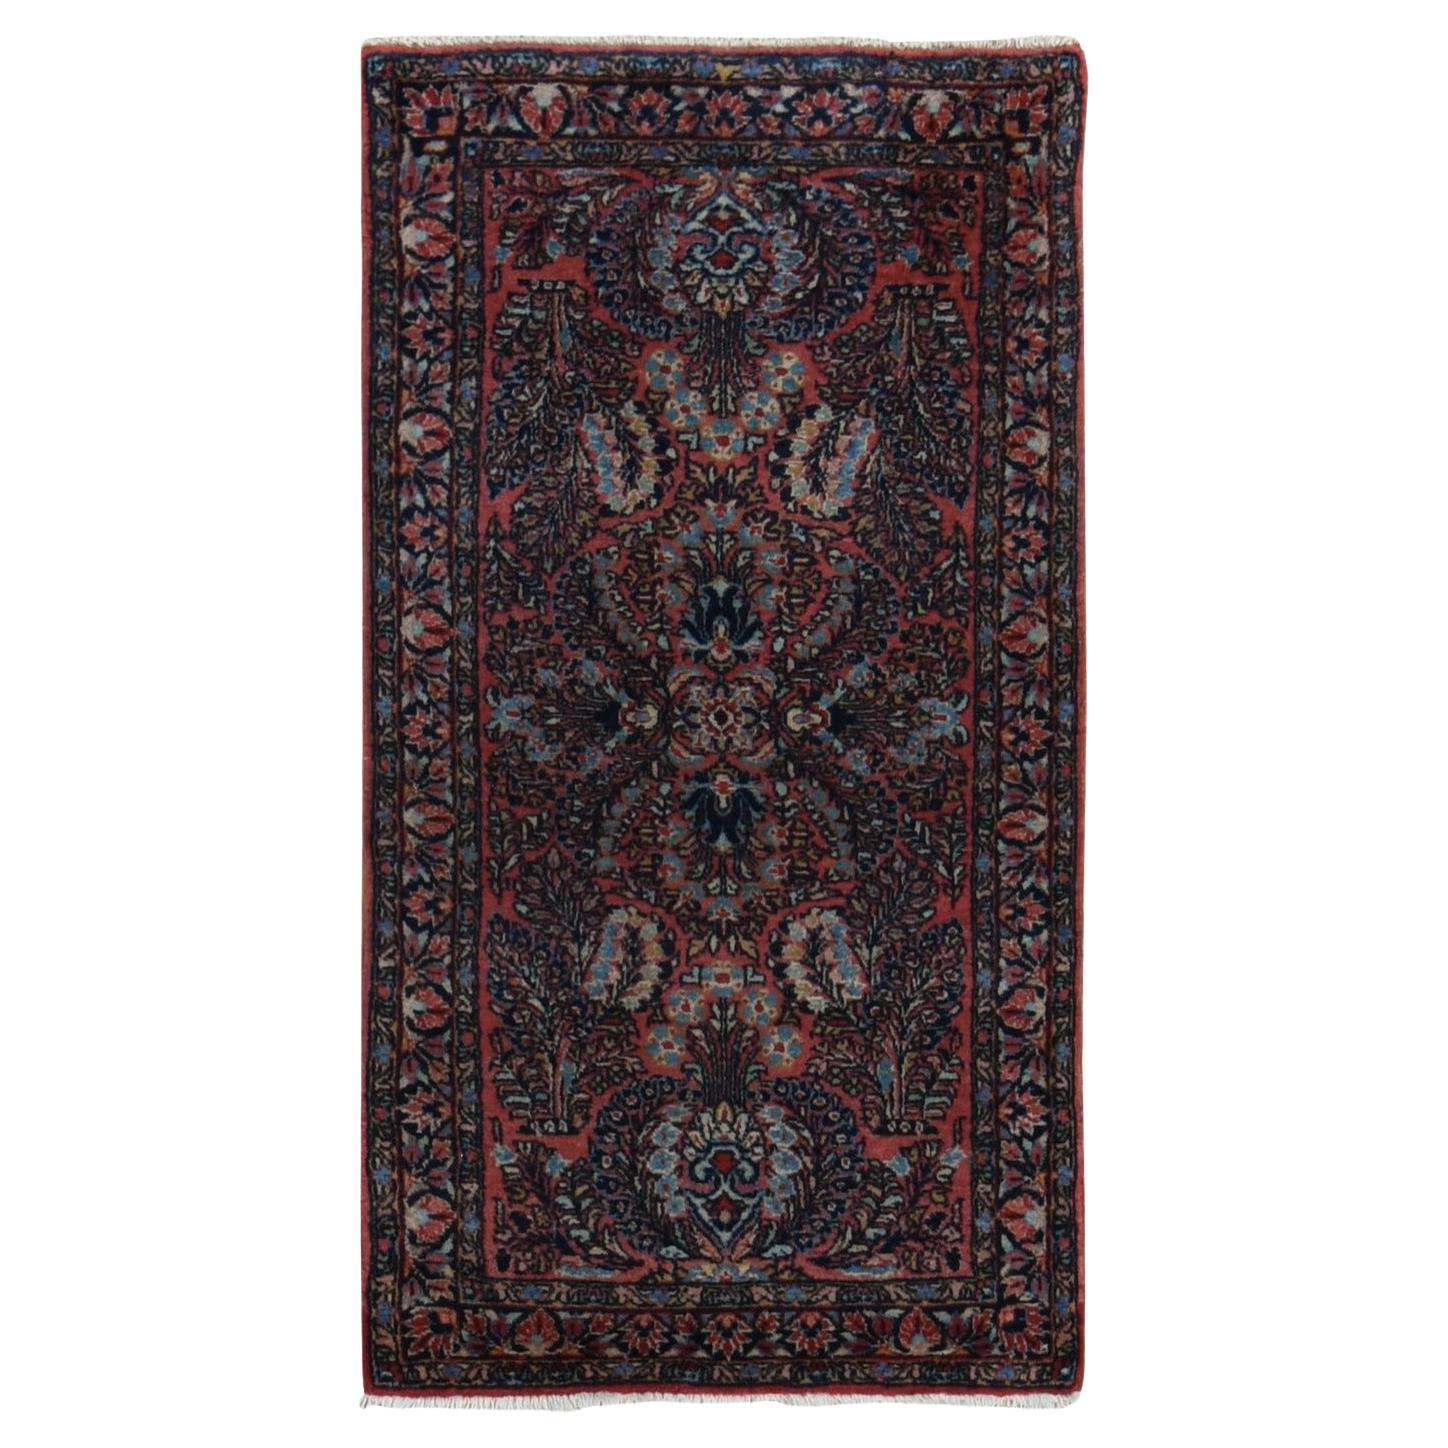 Roter antiker persischer Sarouk-Teppich in Rot, voller Flor, sauber und weich, handgeknüpft, 2'1"x4' im Angebot